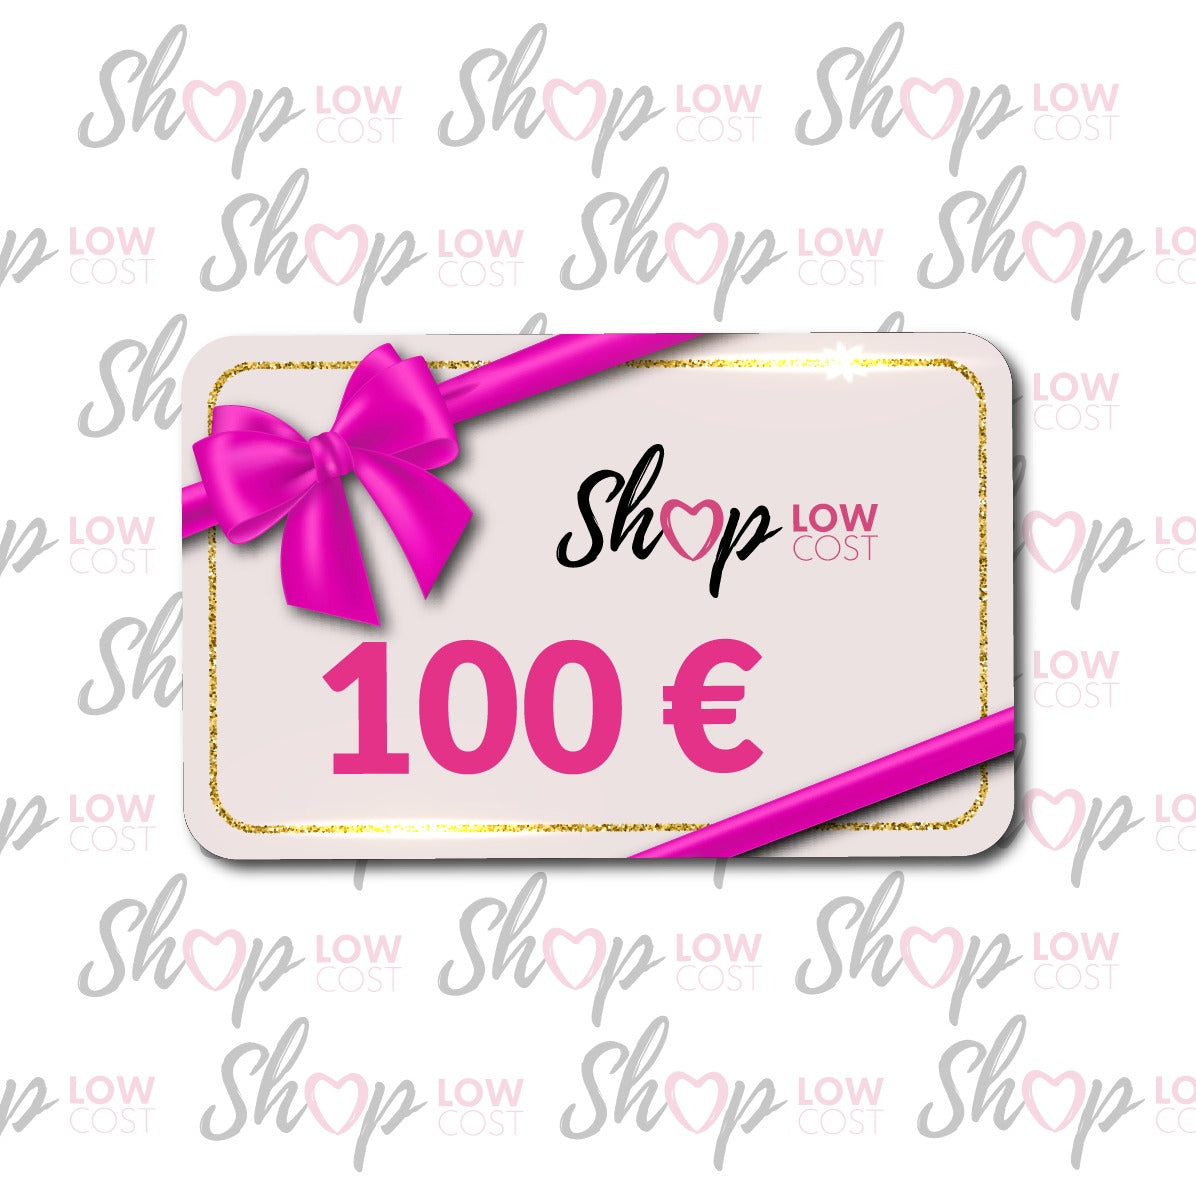 Gift Card Da 100 Euro